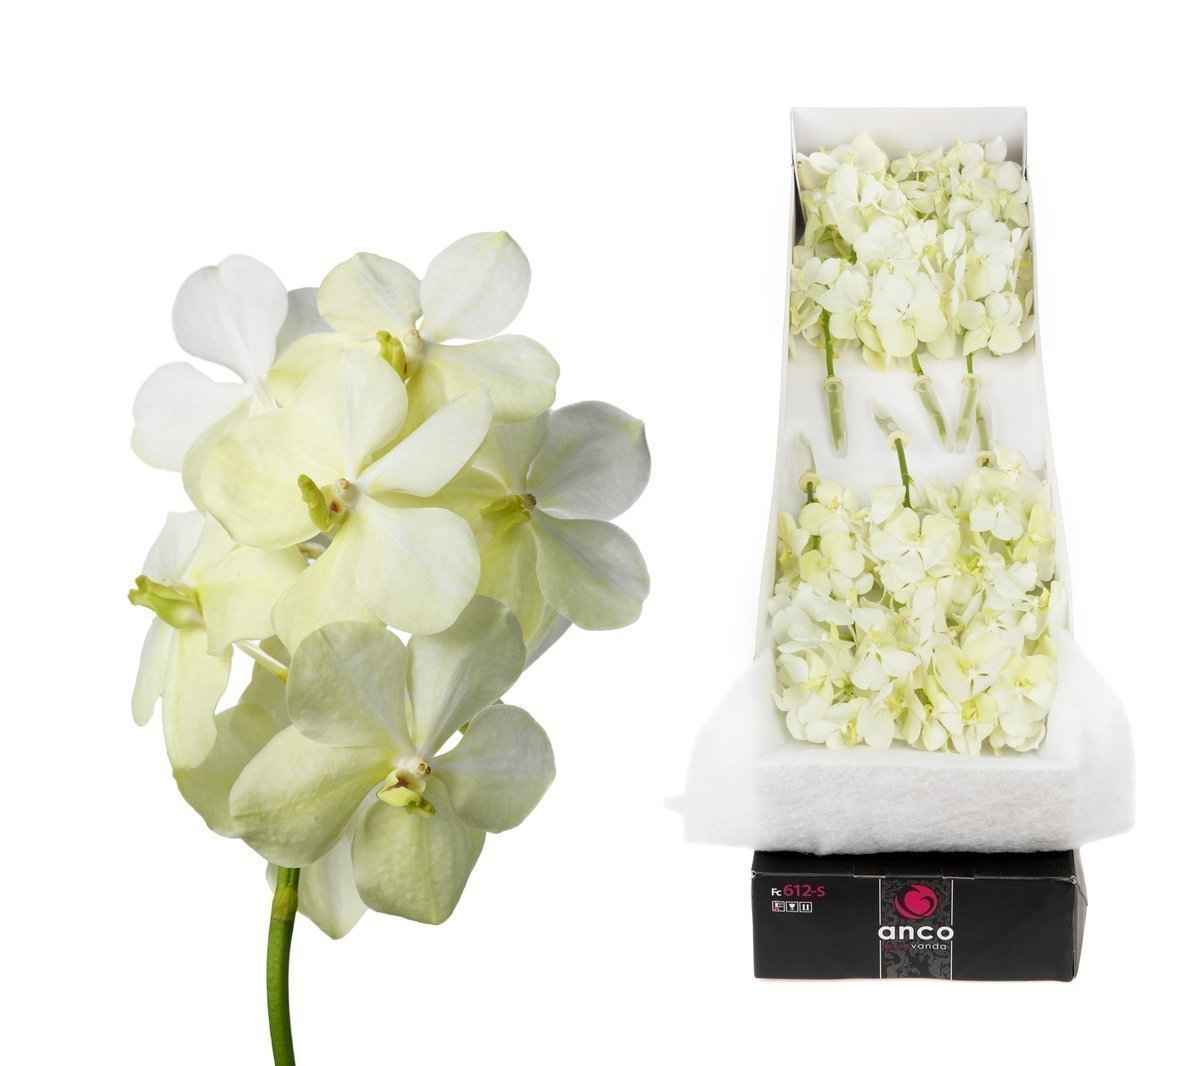 Срезанные цветы оптом Vanda tayanee white per stem от 4шт. из Голландии с доставкой по России